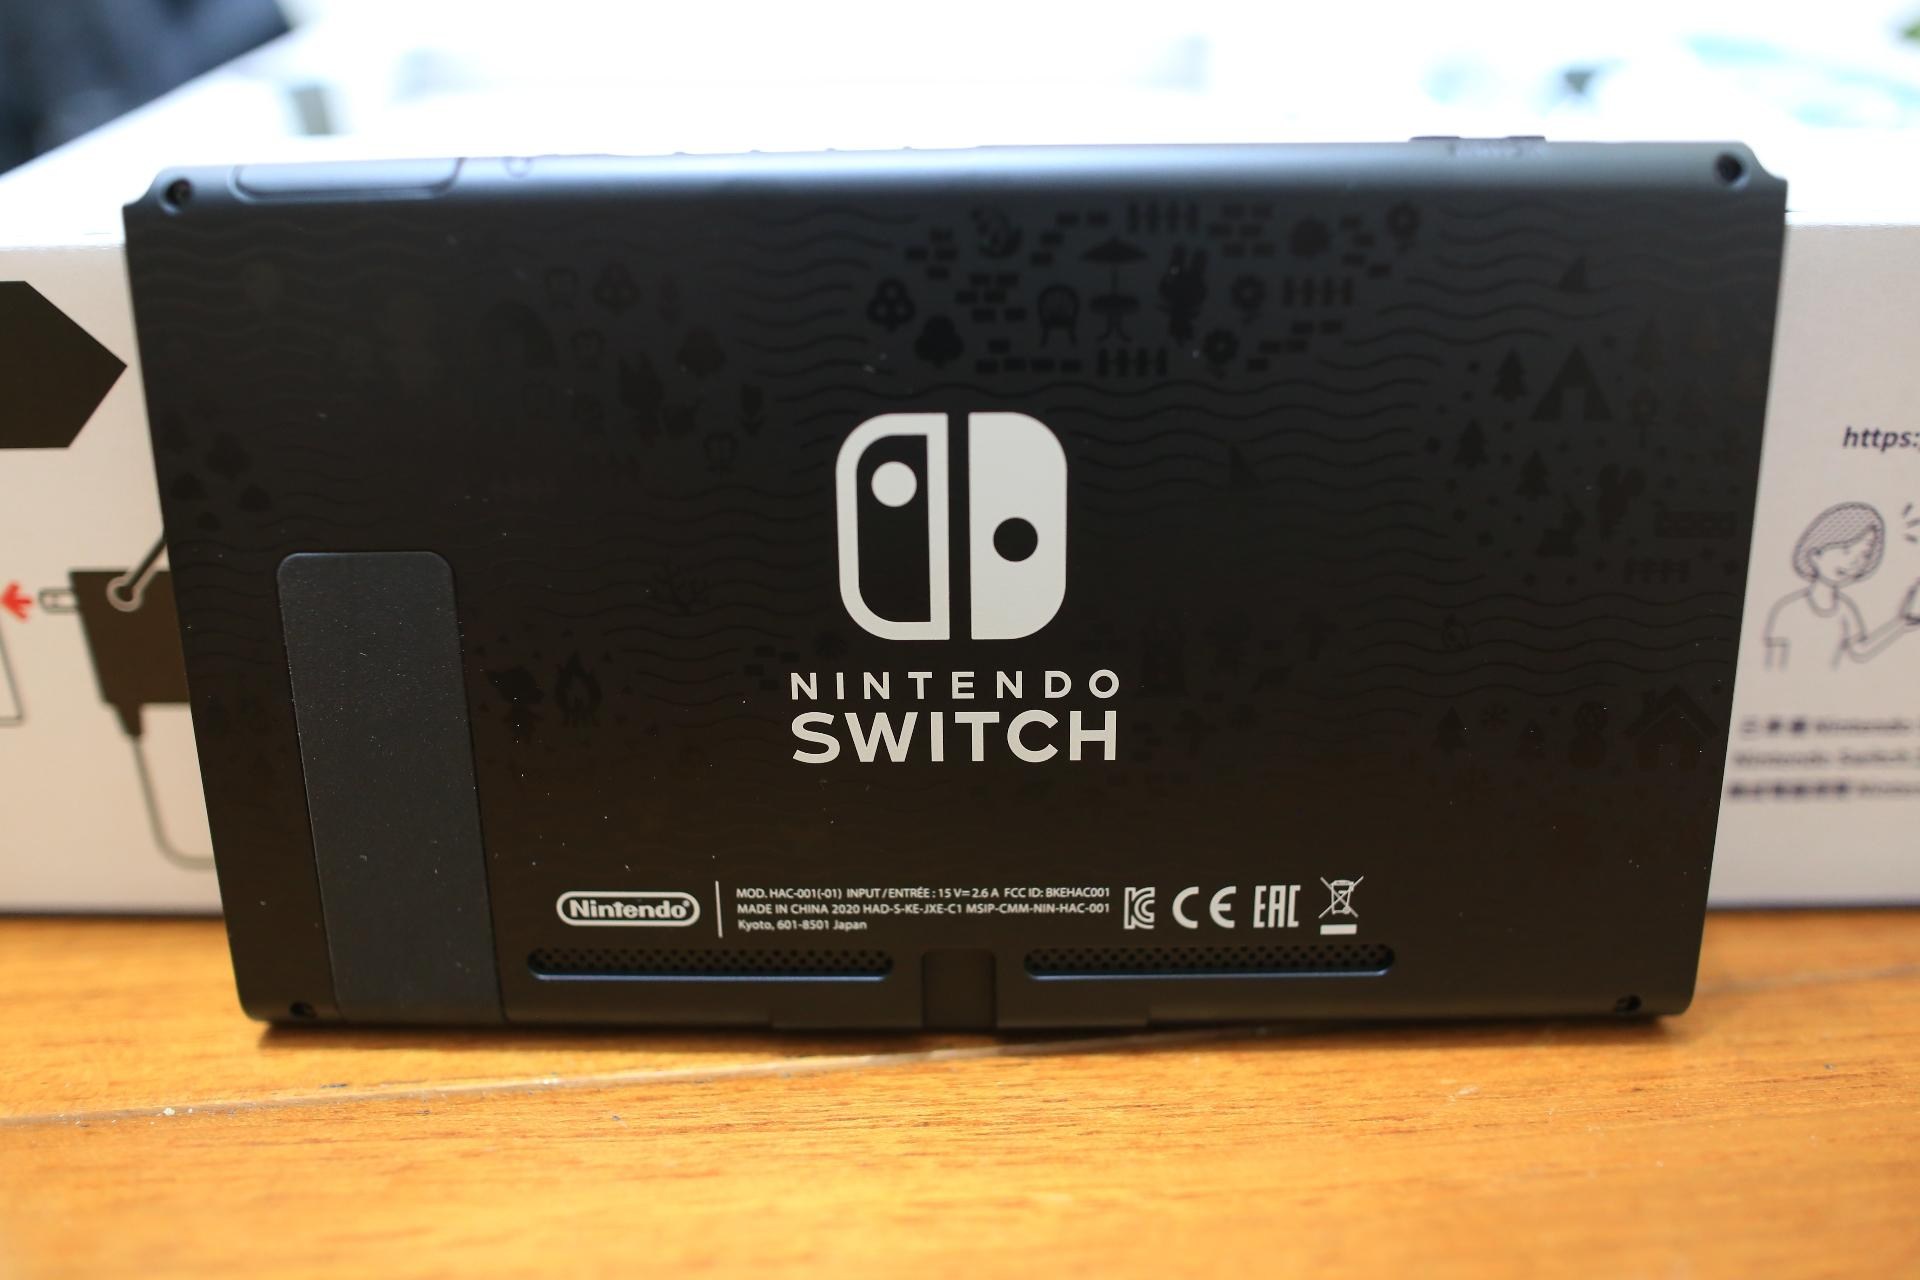 Nintendo Switch 本体 美品 新型 2020/07購入 www.krzysztofbialy.com